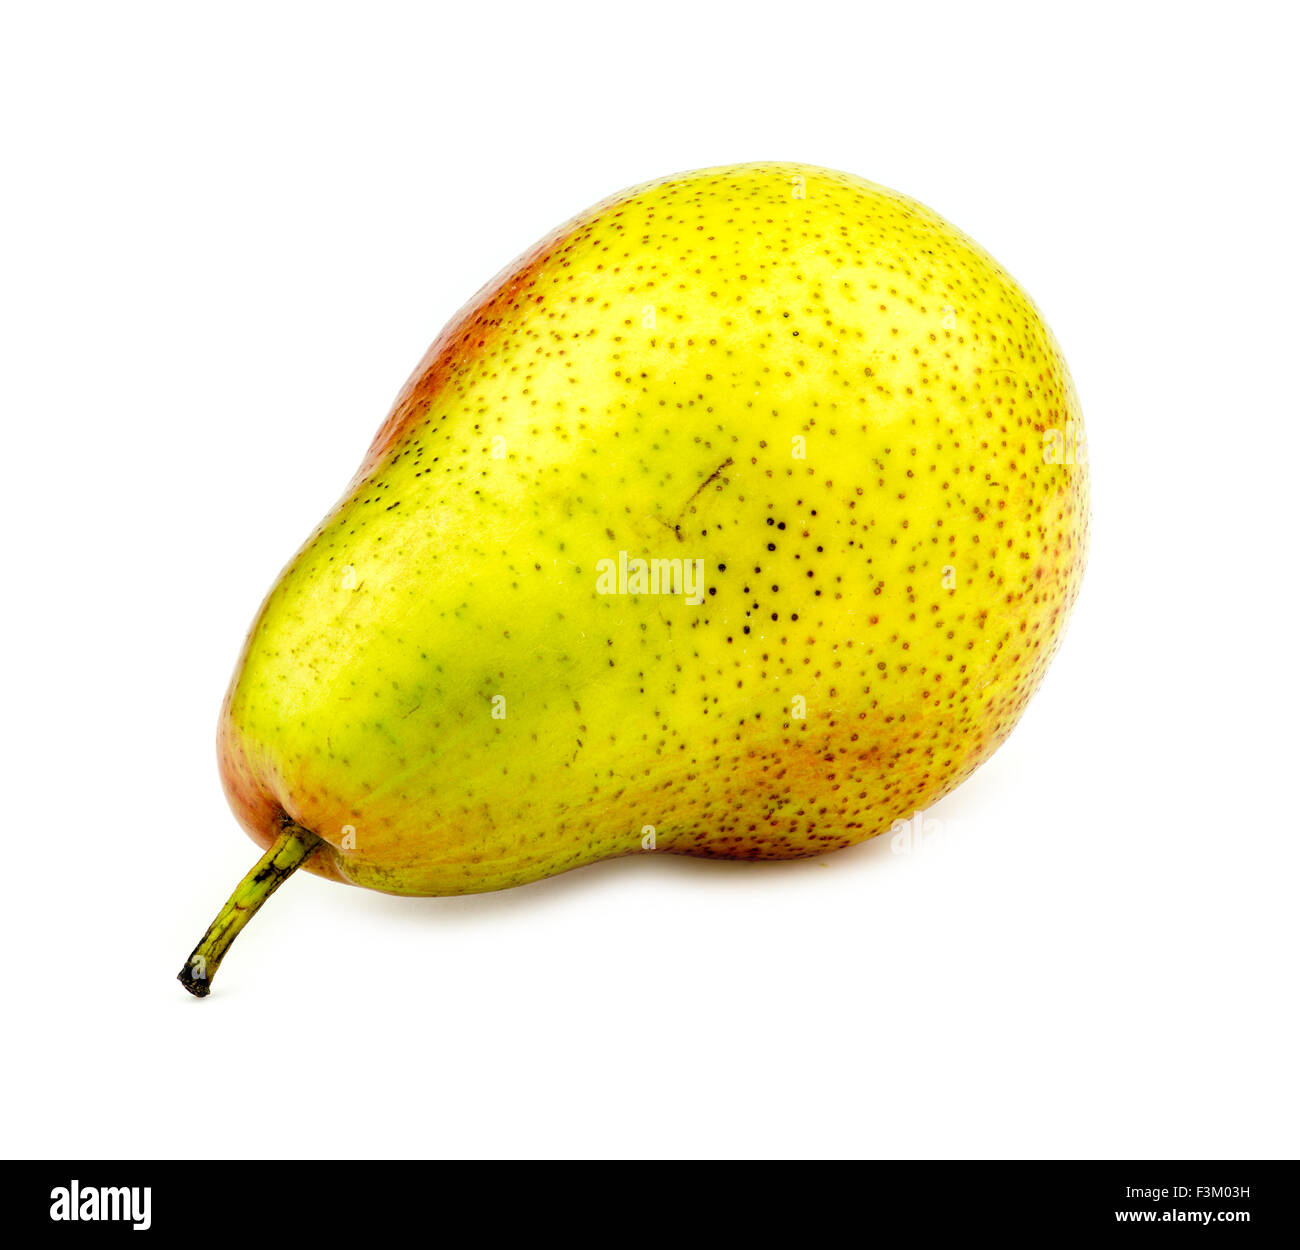 Corella pear studio shot Stock Photo